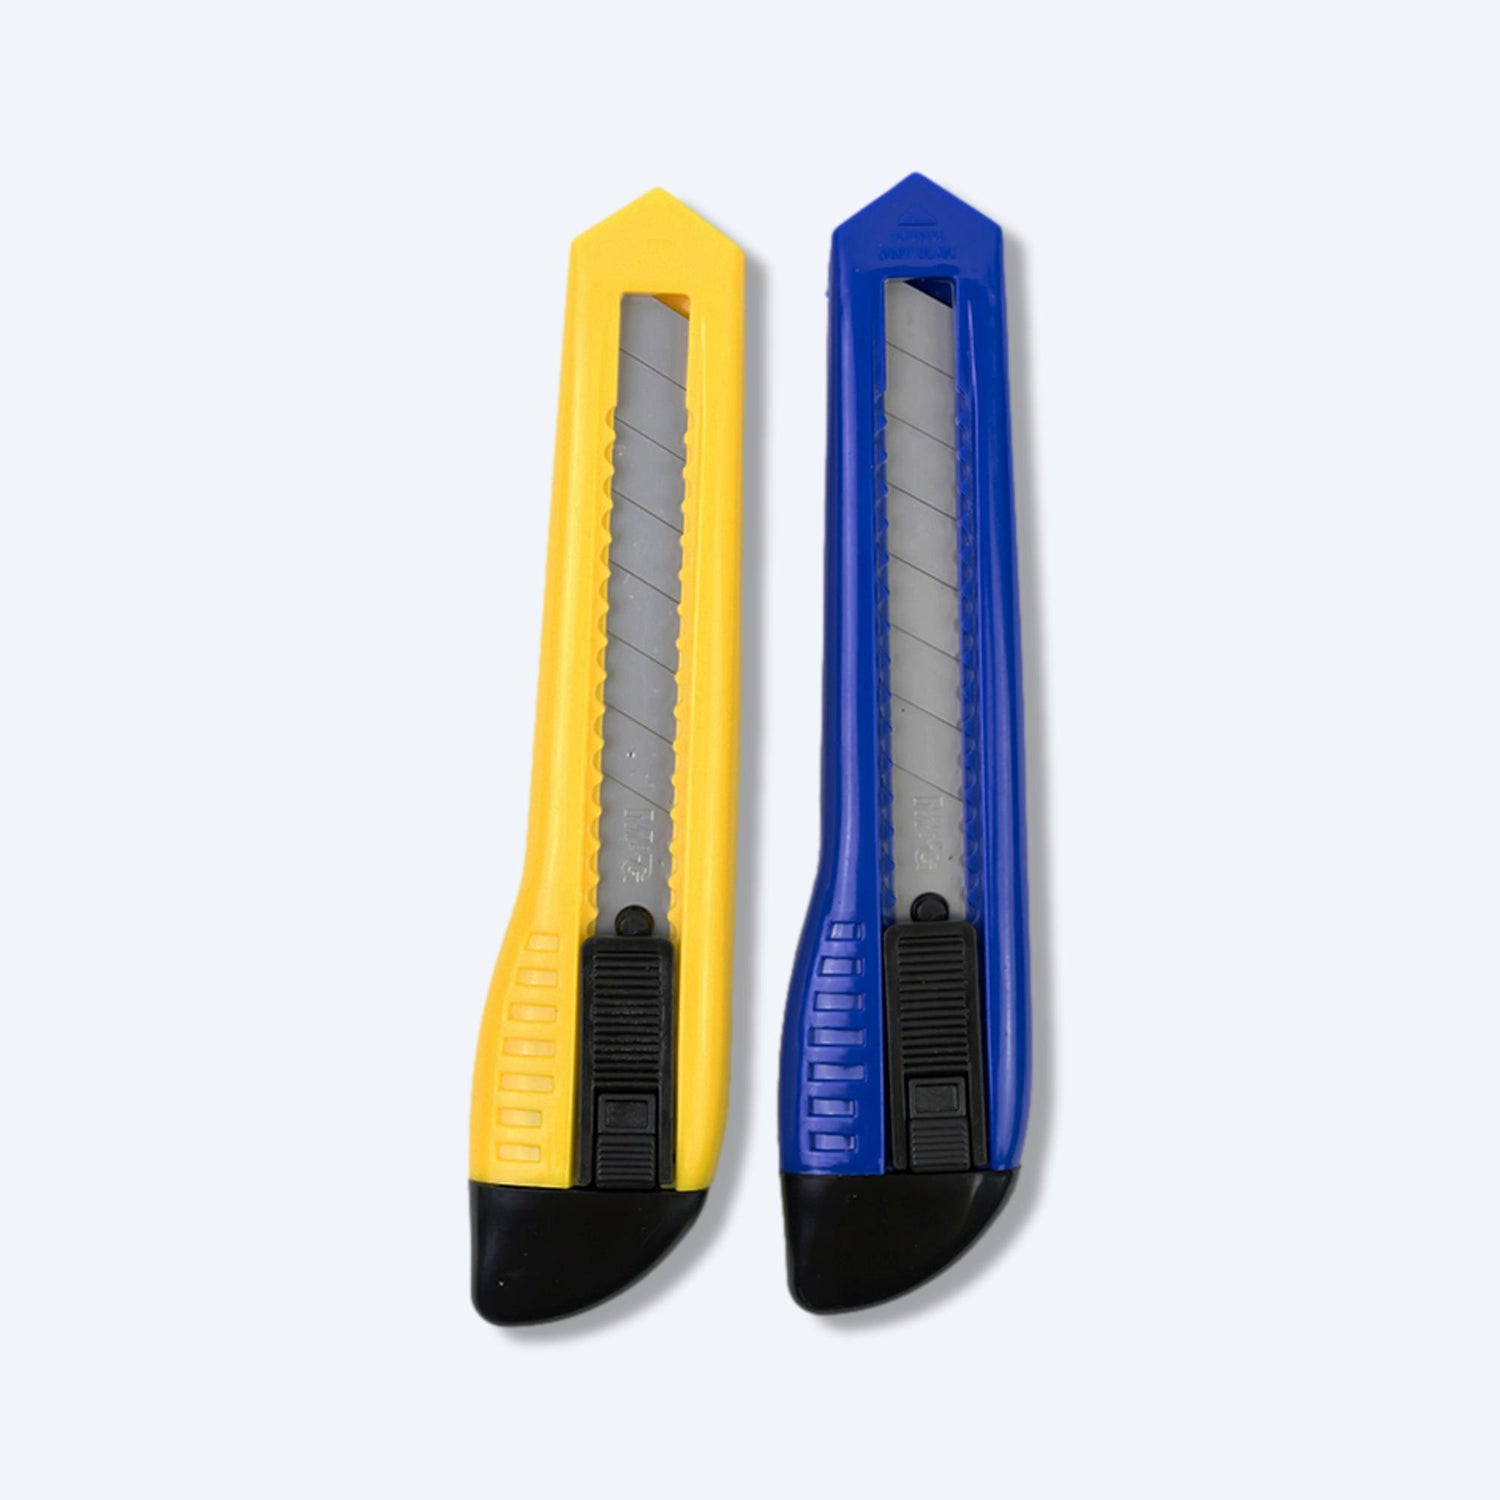 兩把鮮艷的切割刀，一把藍色和一把黃色，為hktvmall上的商戶提供了精確的切割工具選項。這些切割刀的設計既實用又耐用，是hktvmall工具類別中的熱門商品。刀片經過特殊處理，保證了切割的銳利度和持久性，非常適合hktvmall商戶和專業人士使用。